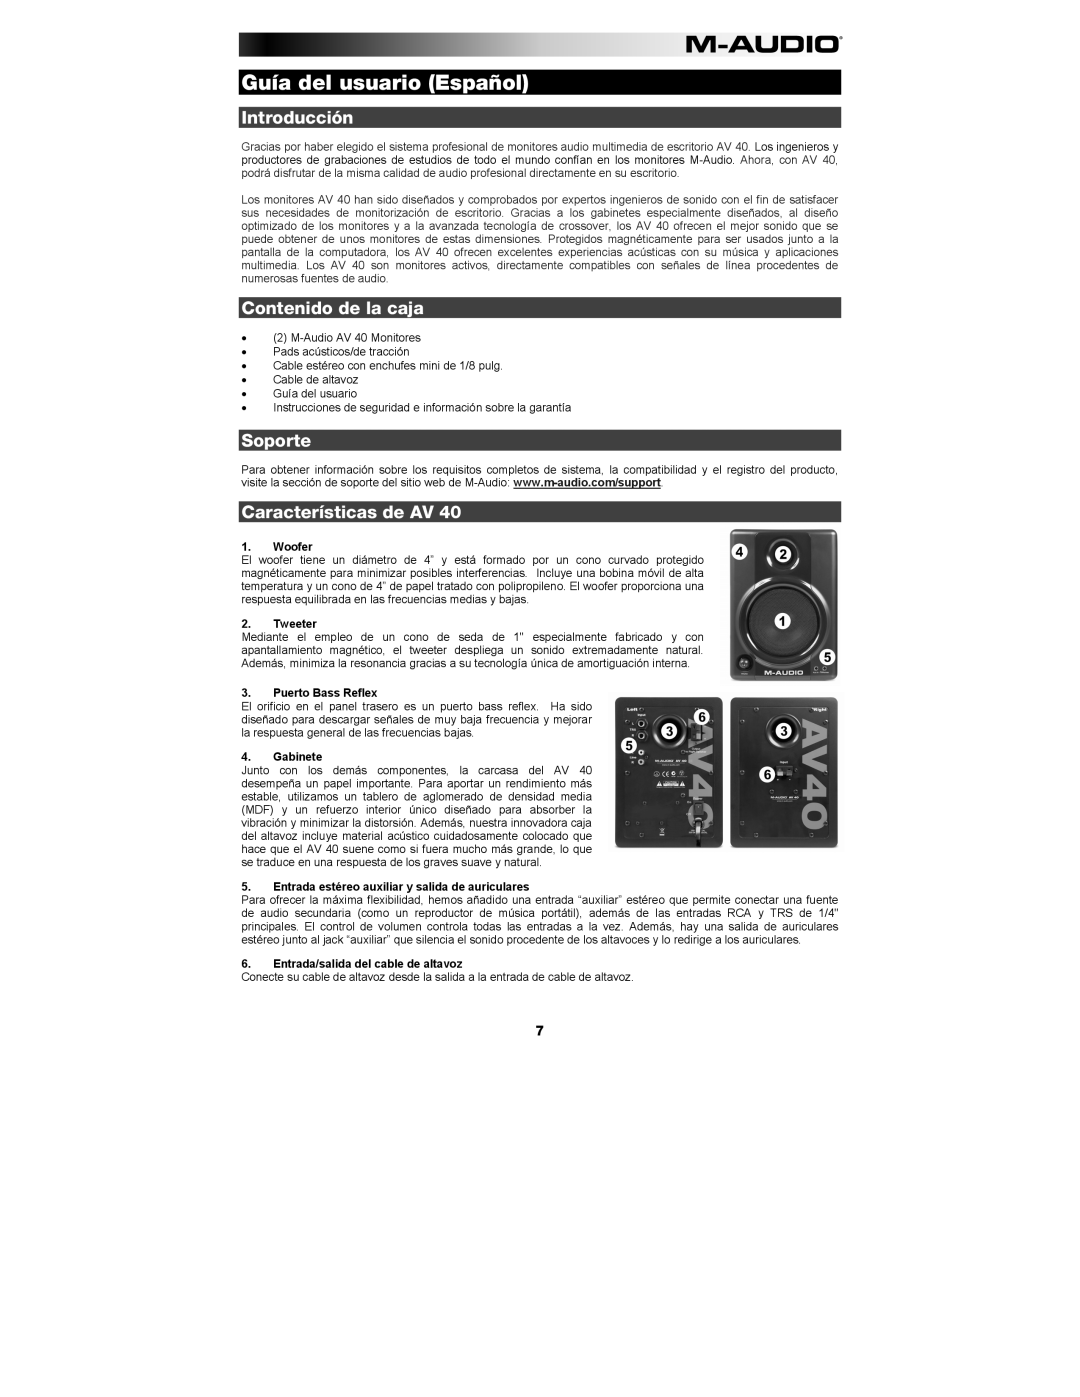 M-Audio AV 40 manual Guía del usuario Español, Introducción, Contenido de la caja, Soporte, Características de AV, Woofer 